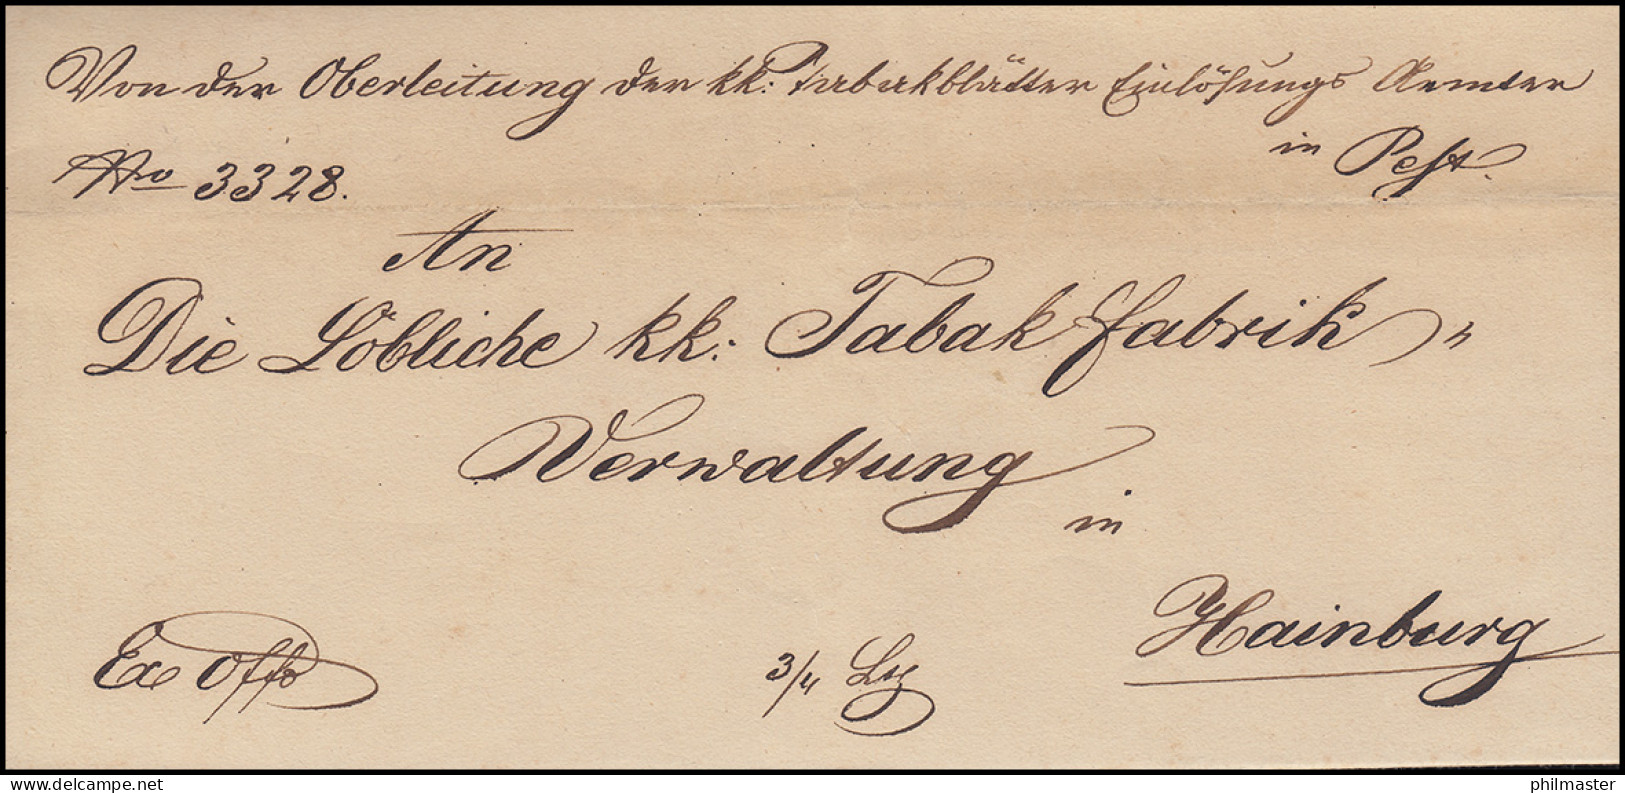 Ungarn Vorphilatelie Brief Aus PESTH Vom 23.12.1847 Nach HAINBURG 26.12. - ...-1867 Voorfilatelie